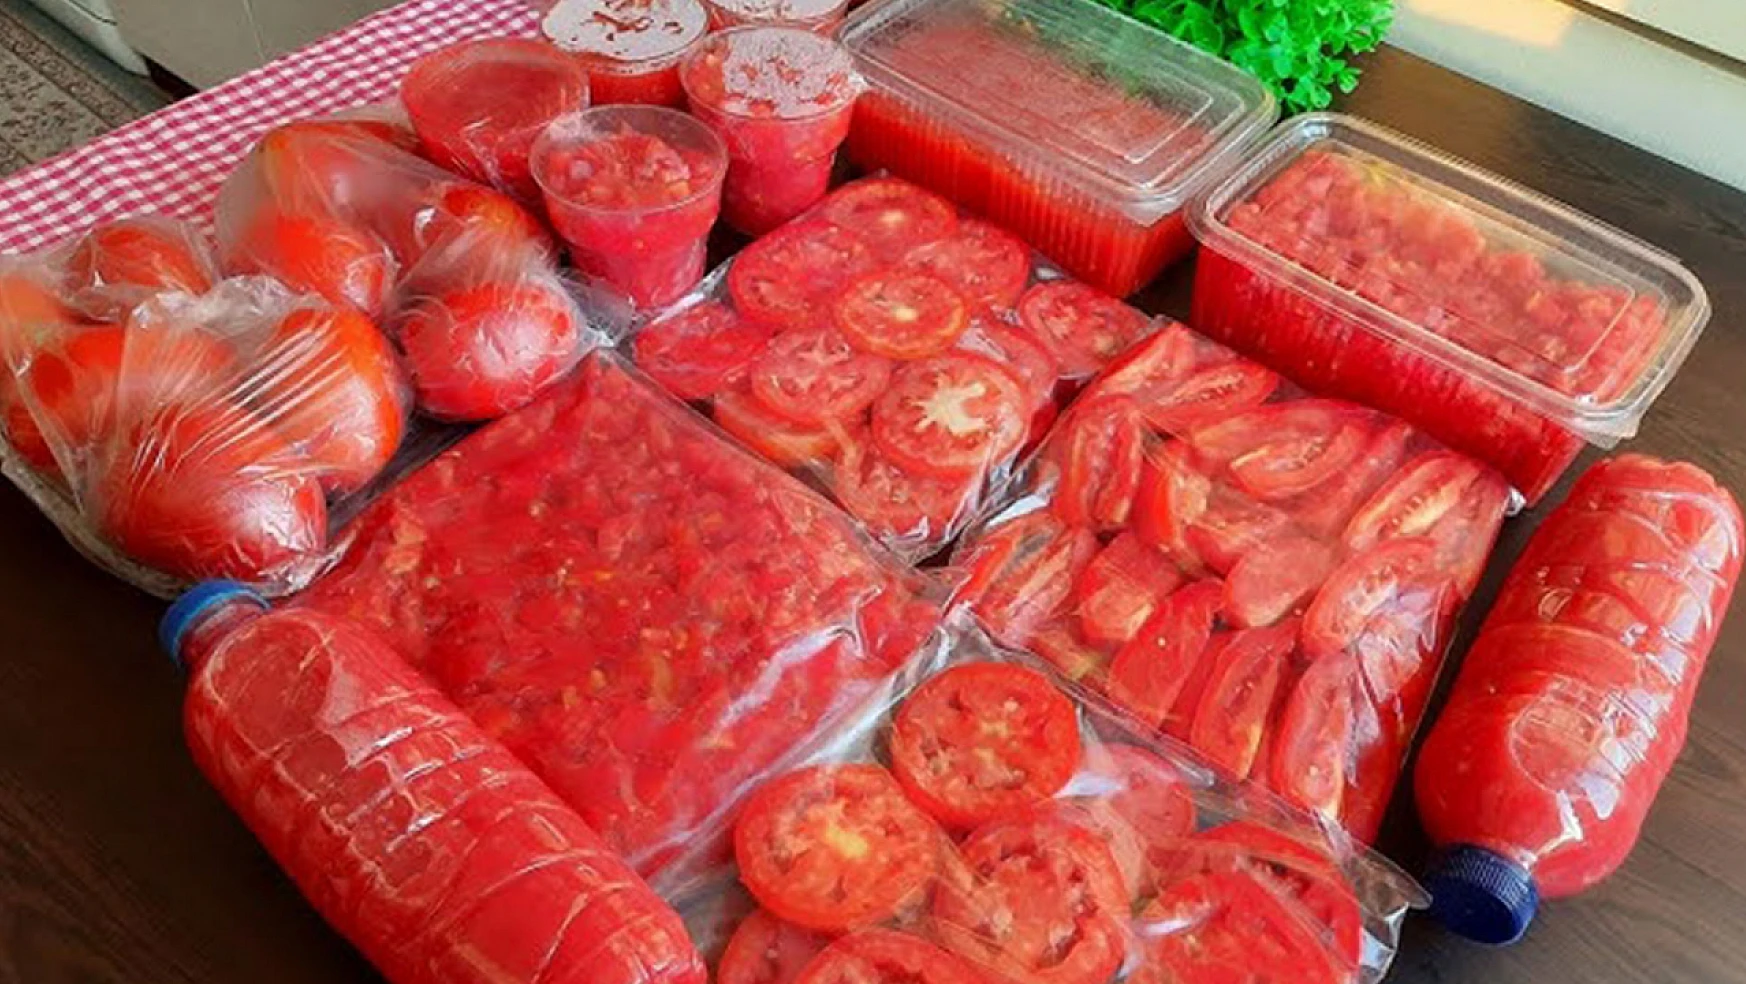 Çiğ domates nasıl saklanır? Yıllarca yanlış yapmışız hep. Hem ömrü uzuyor hem lezzeti artıyor